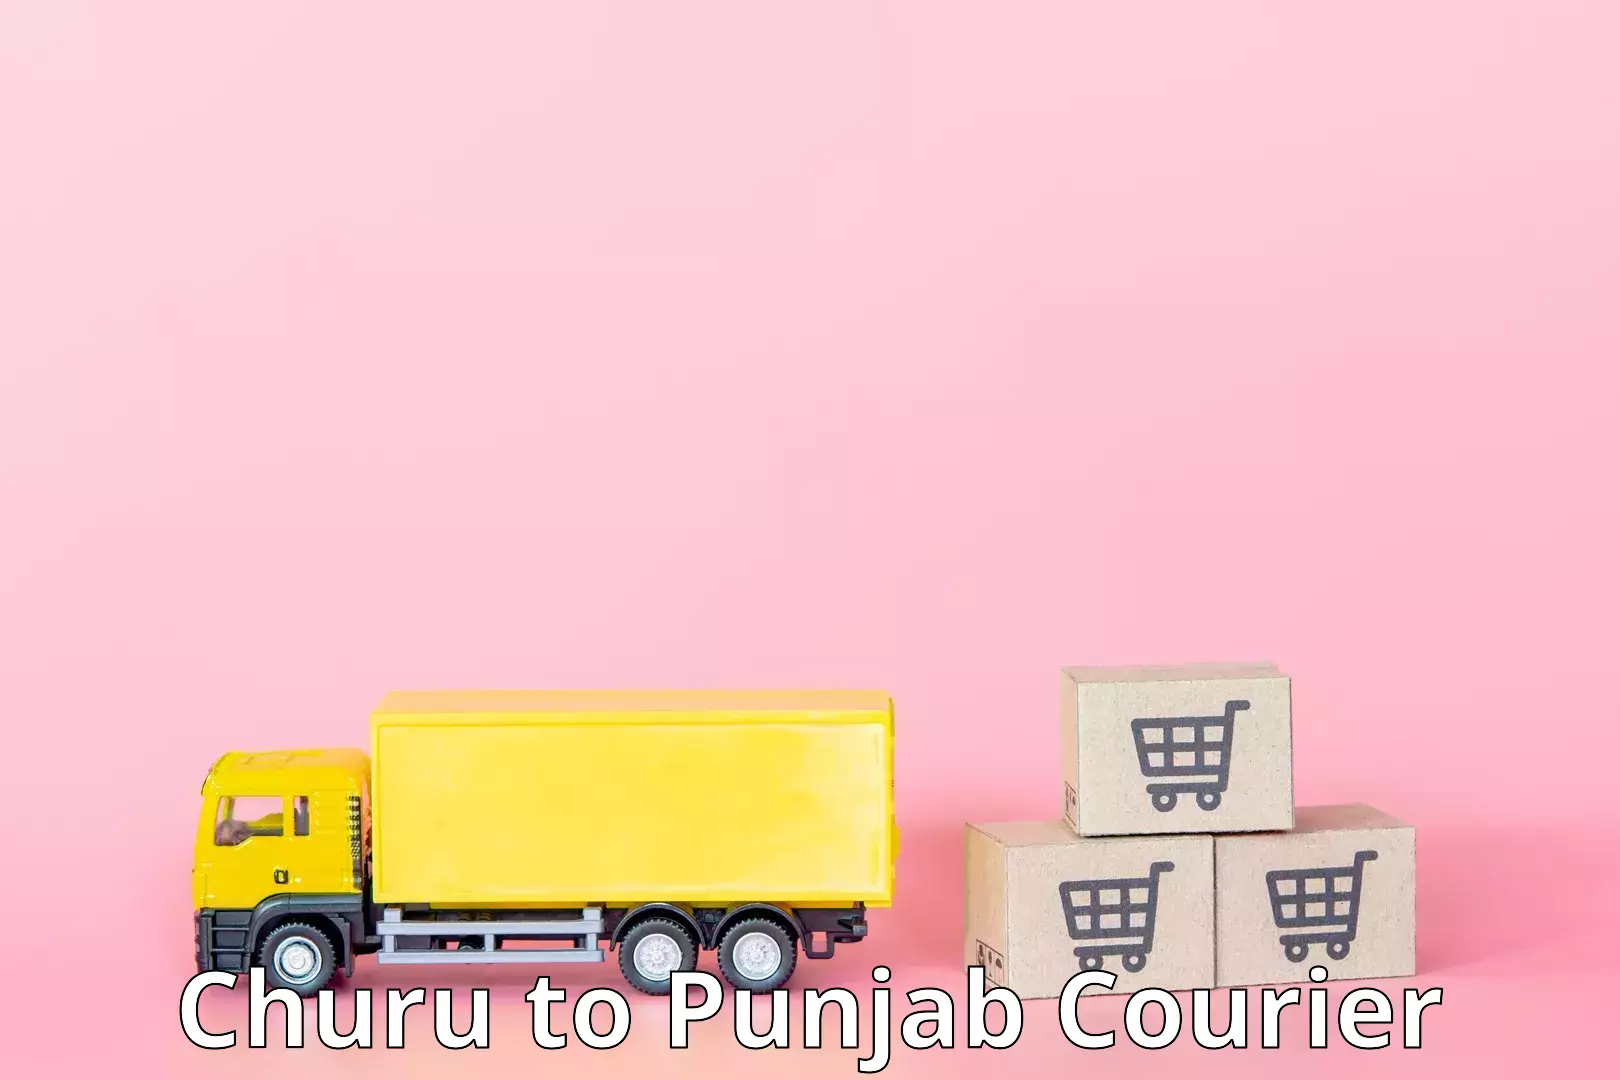 24-hour courier service Churu to Sirhind Fatehgarh